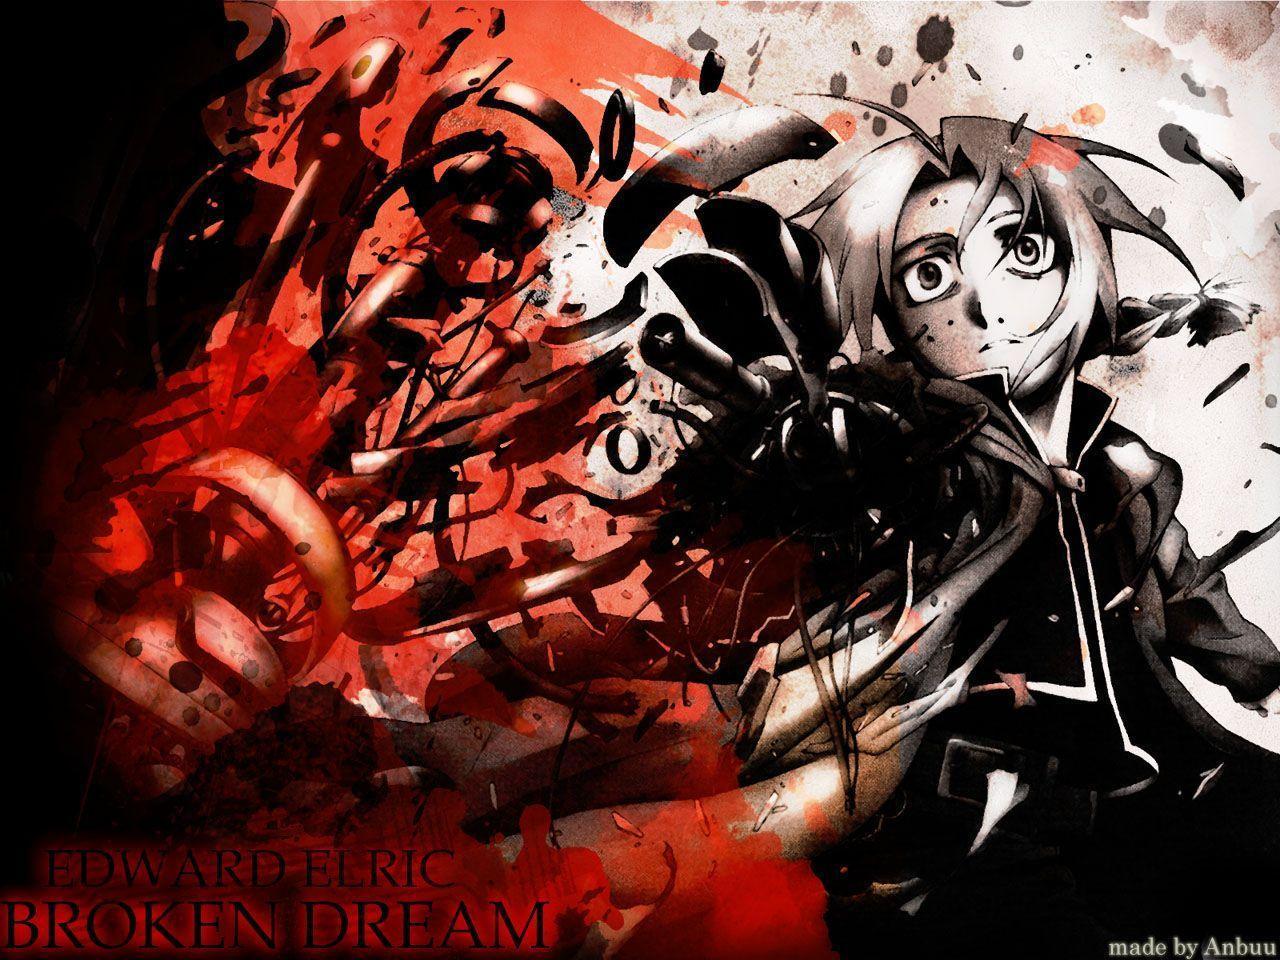 Anime Fullmetal Alchemist Image 26. hdwallpaper